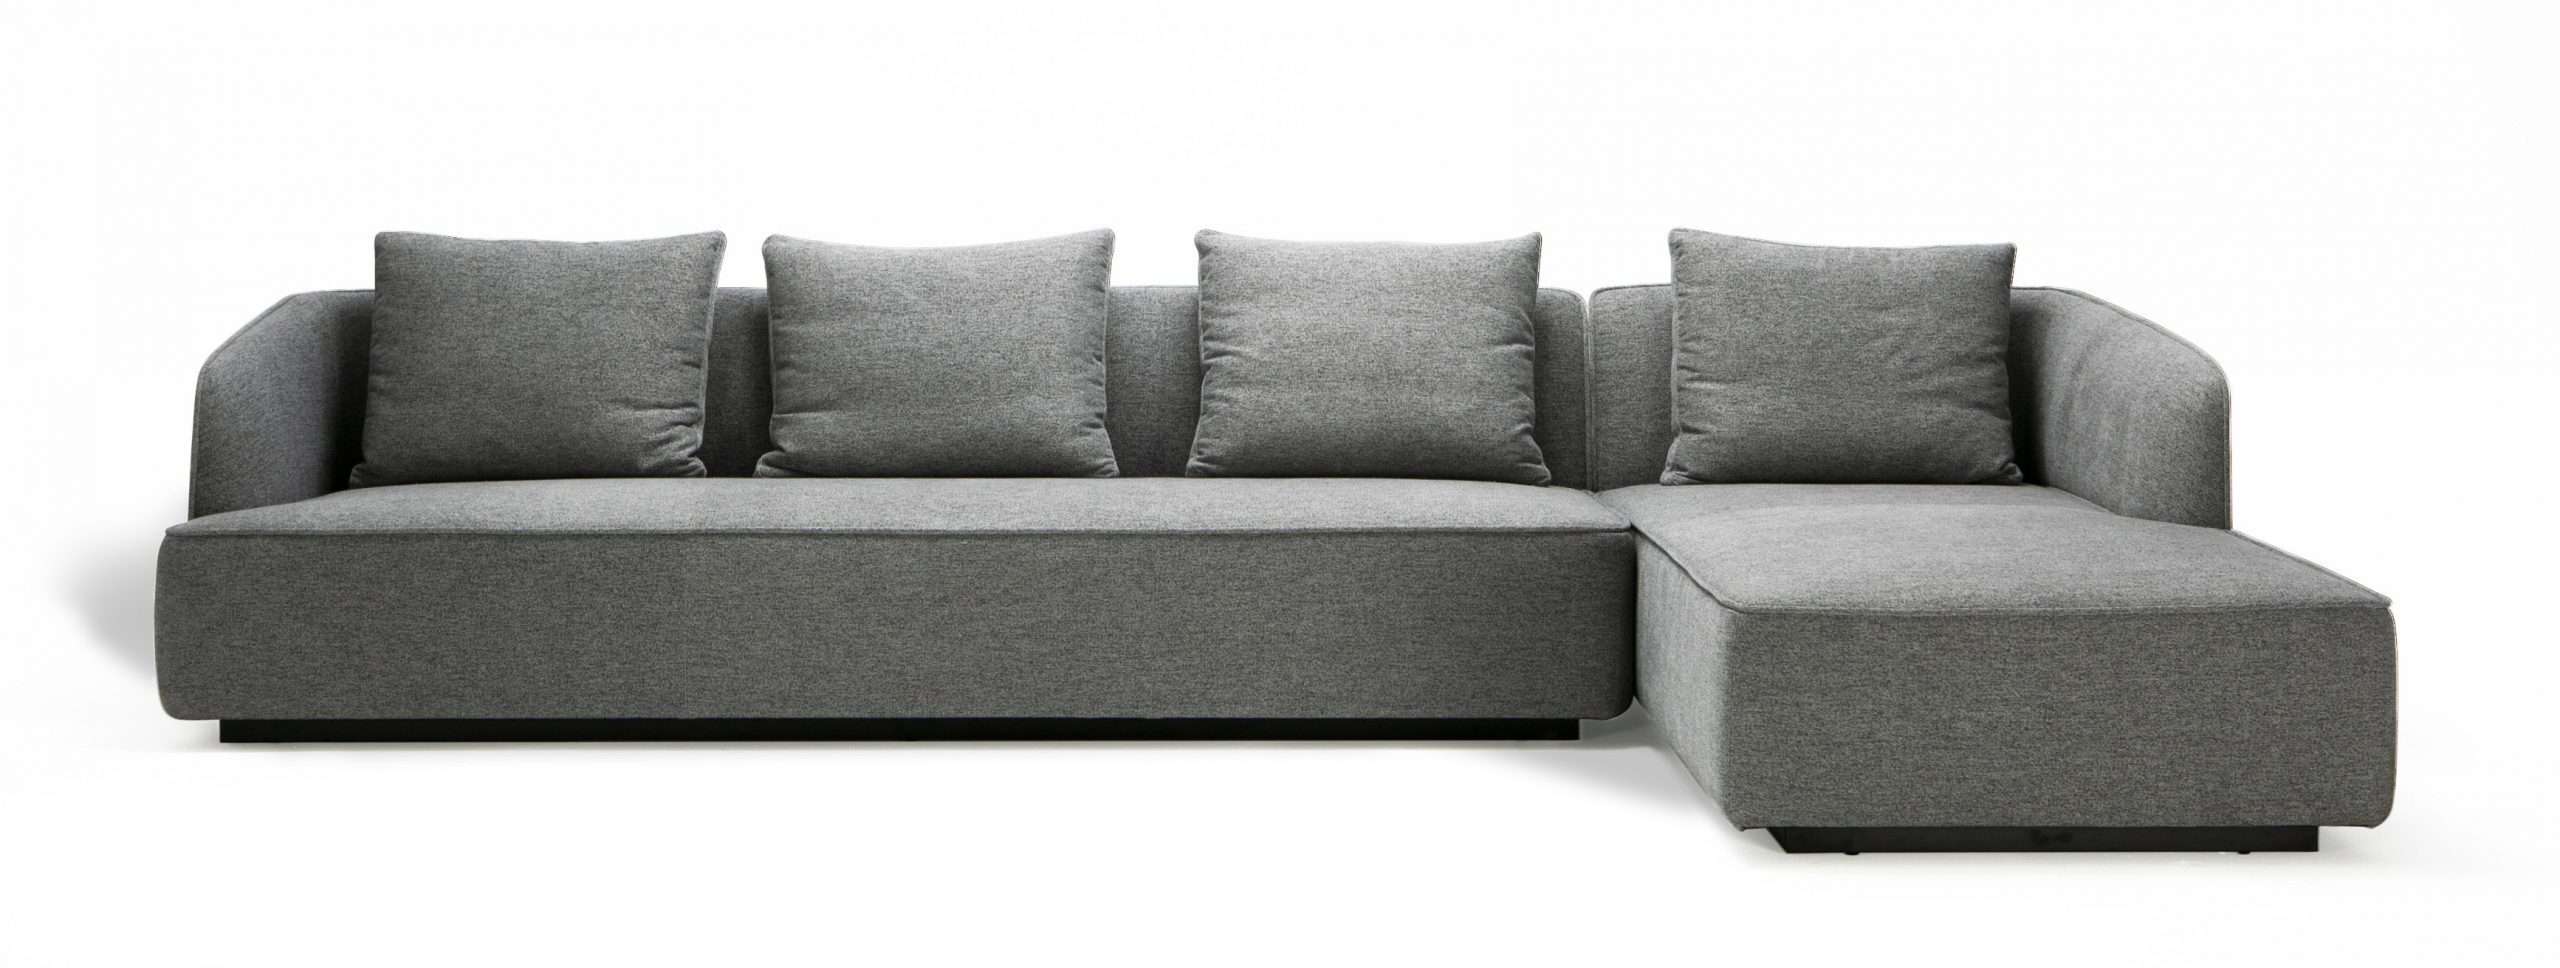 ZELA Sectional Sofa